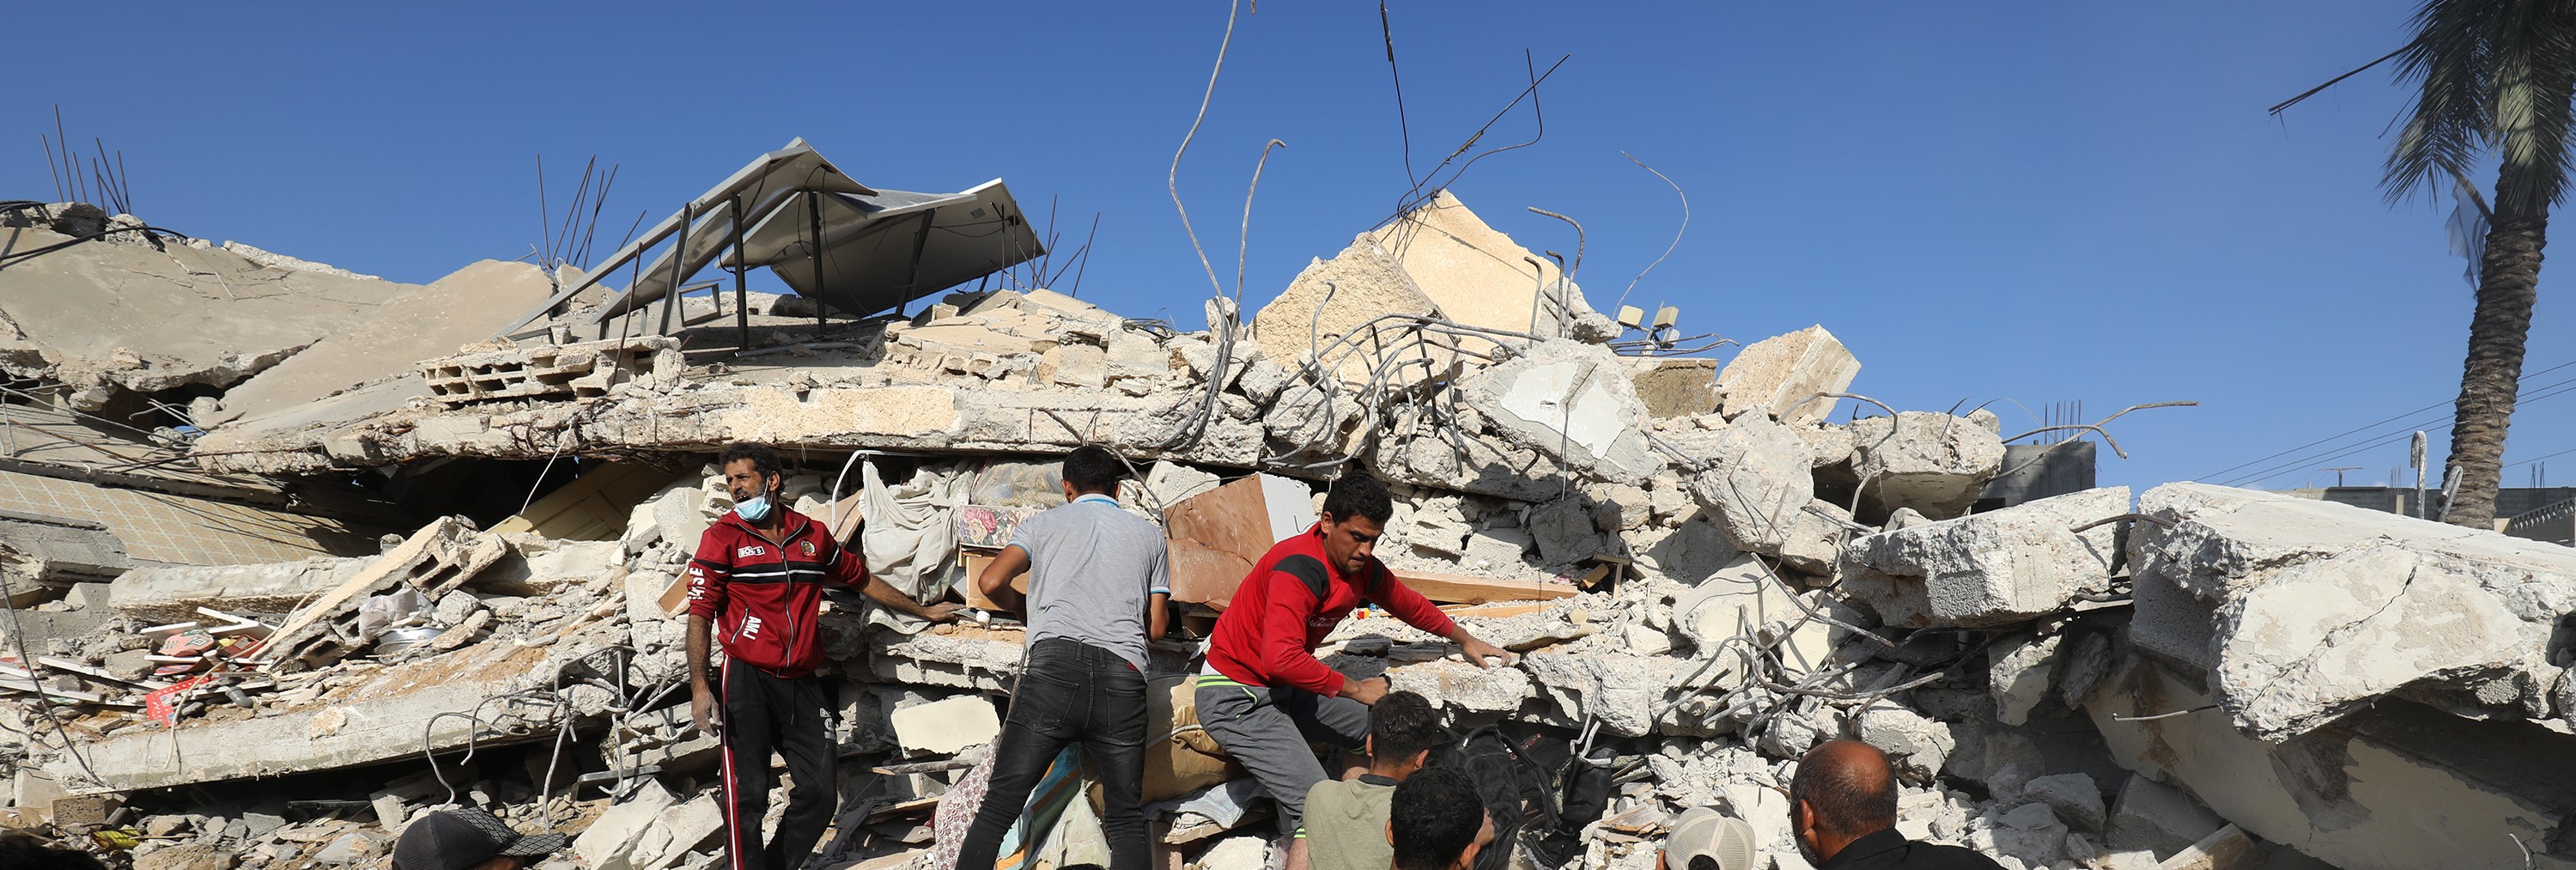 Gazze'deki 700 kişi Türkiye için tahliye bekliyor